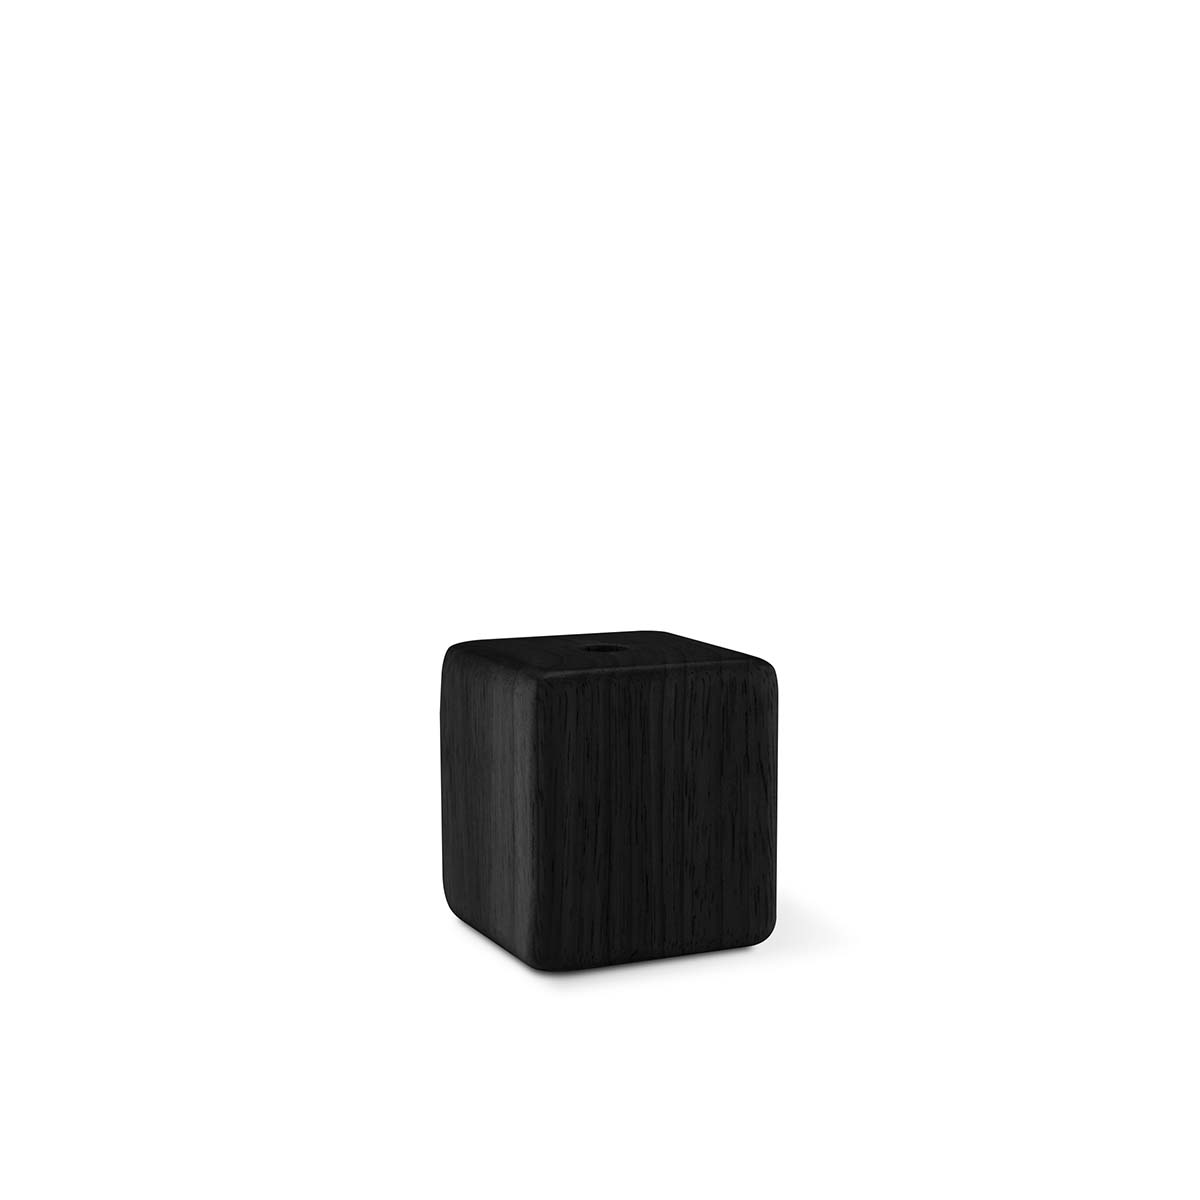 Tangla lighting - TLLH019BK - lamp holder wood - E27 - cube - black